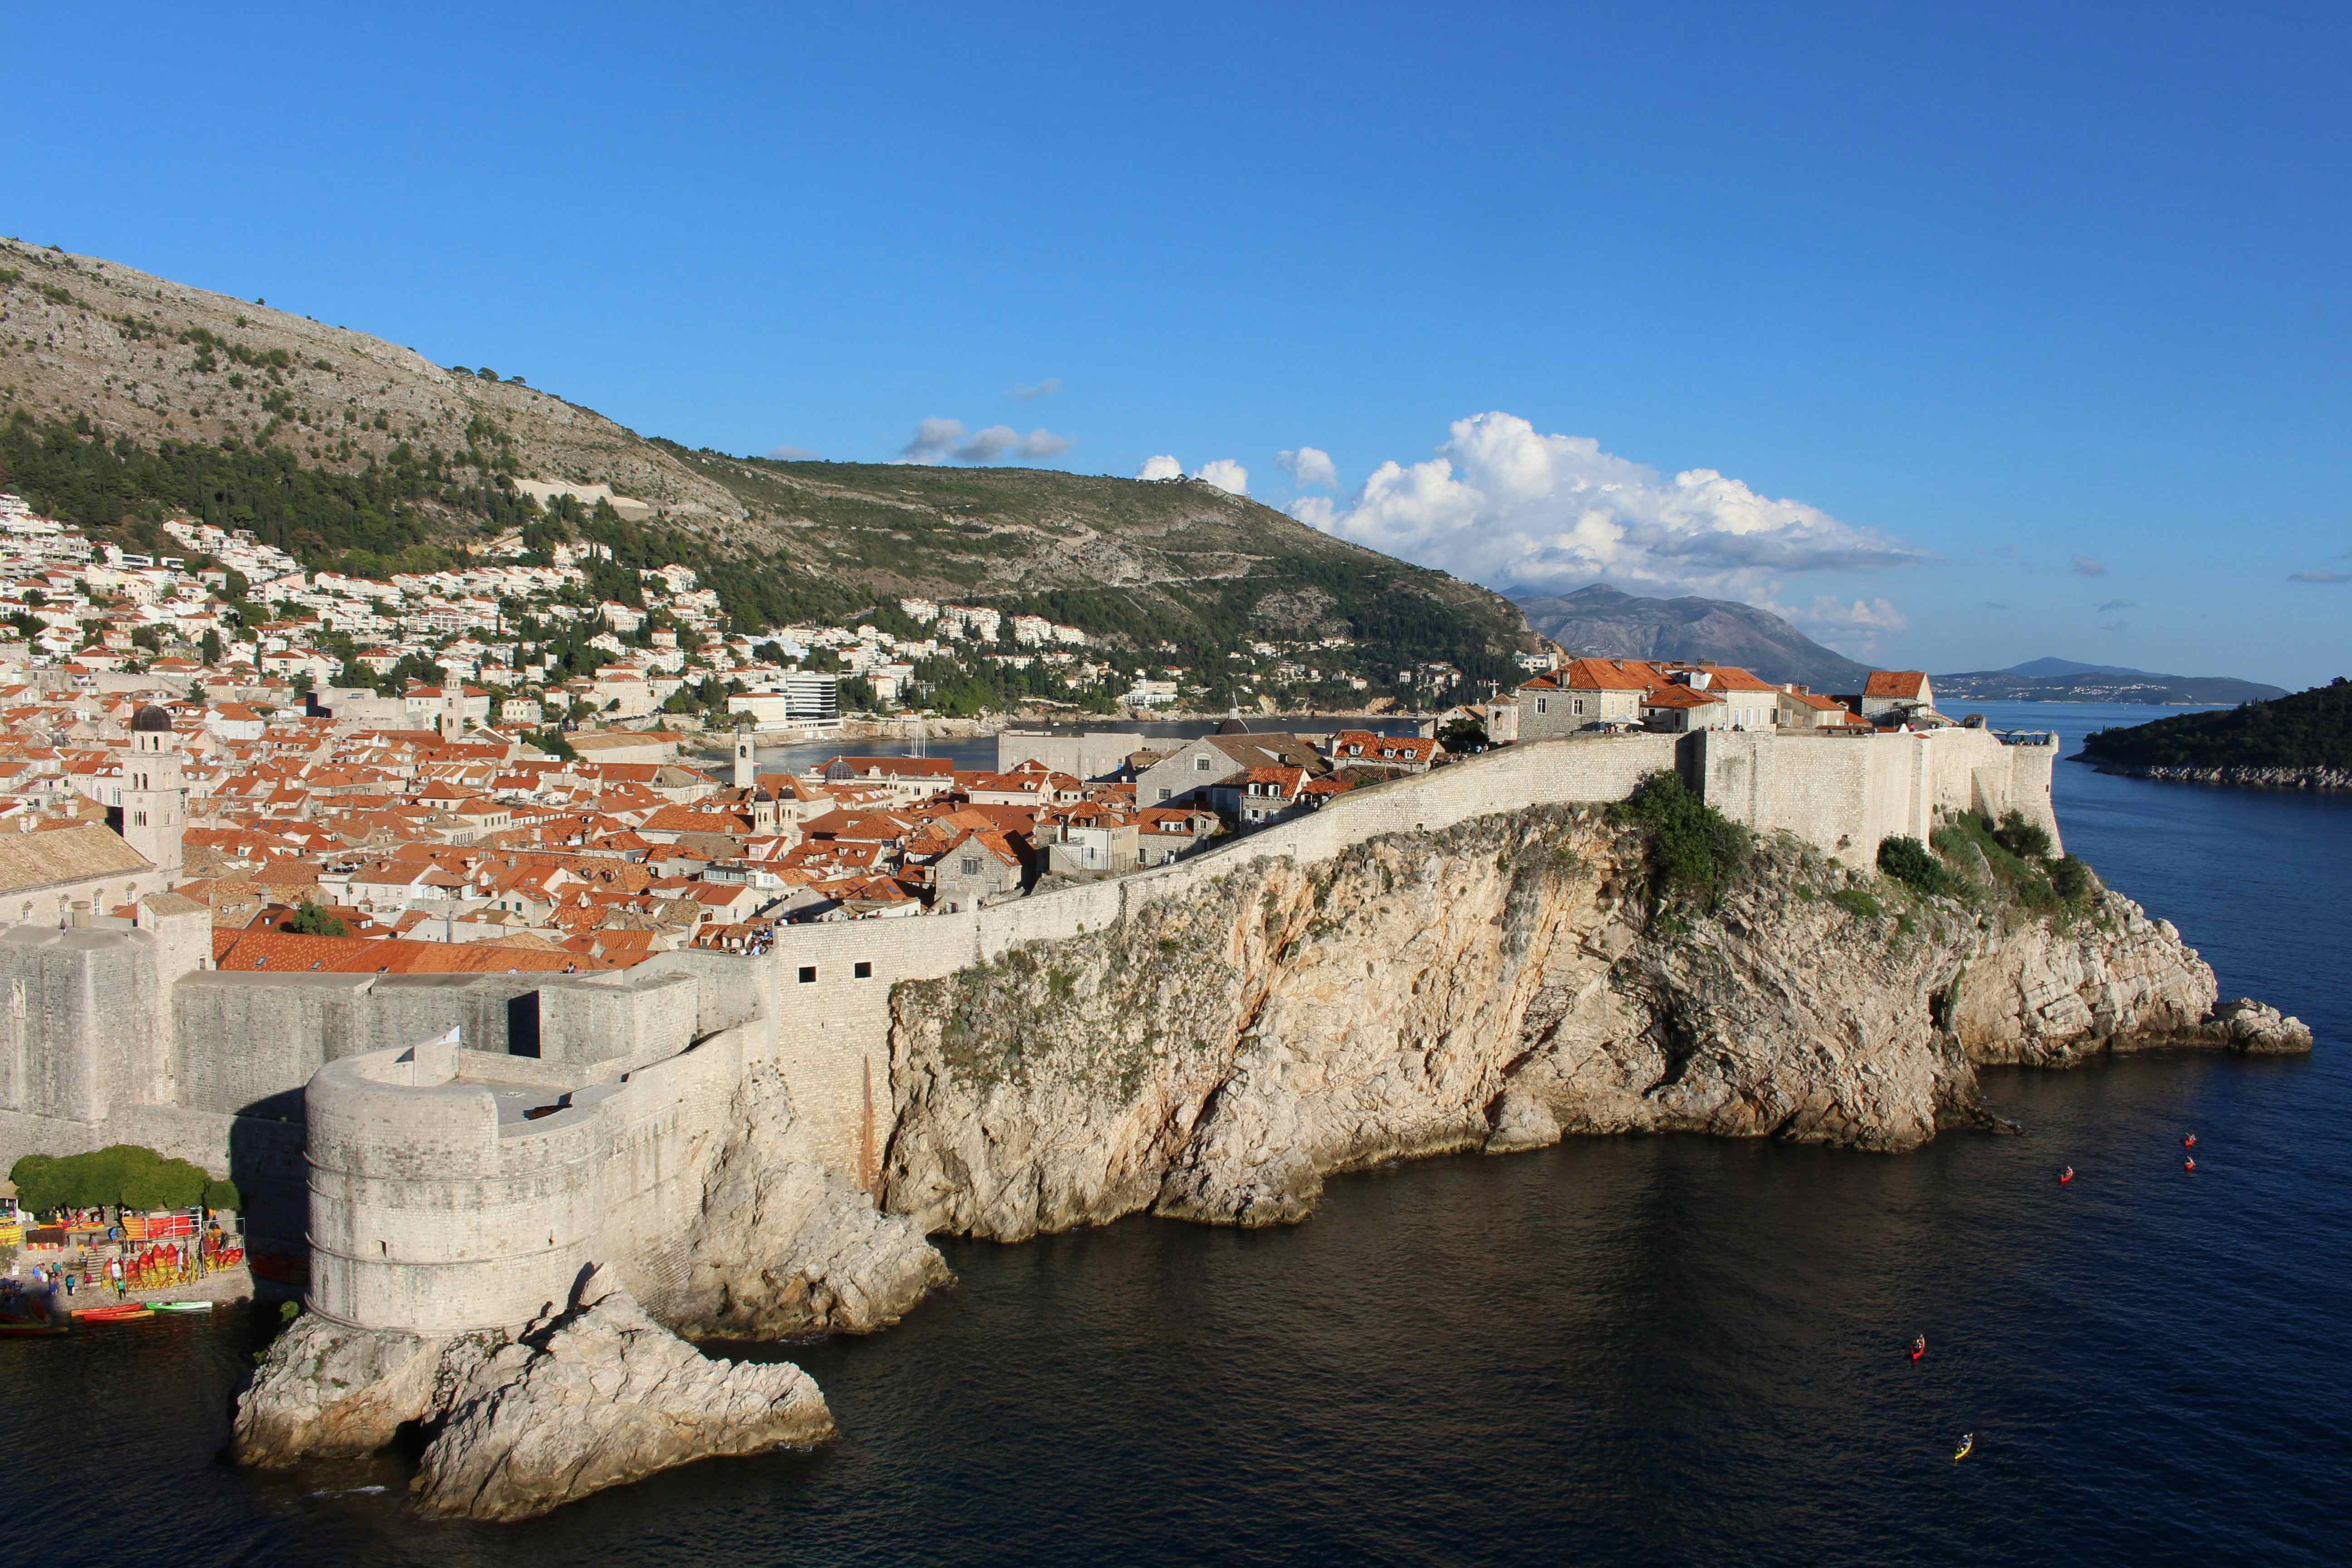 Camping in Dubrovnik-Neretva